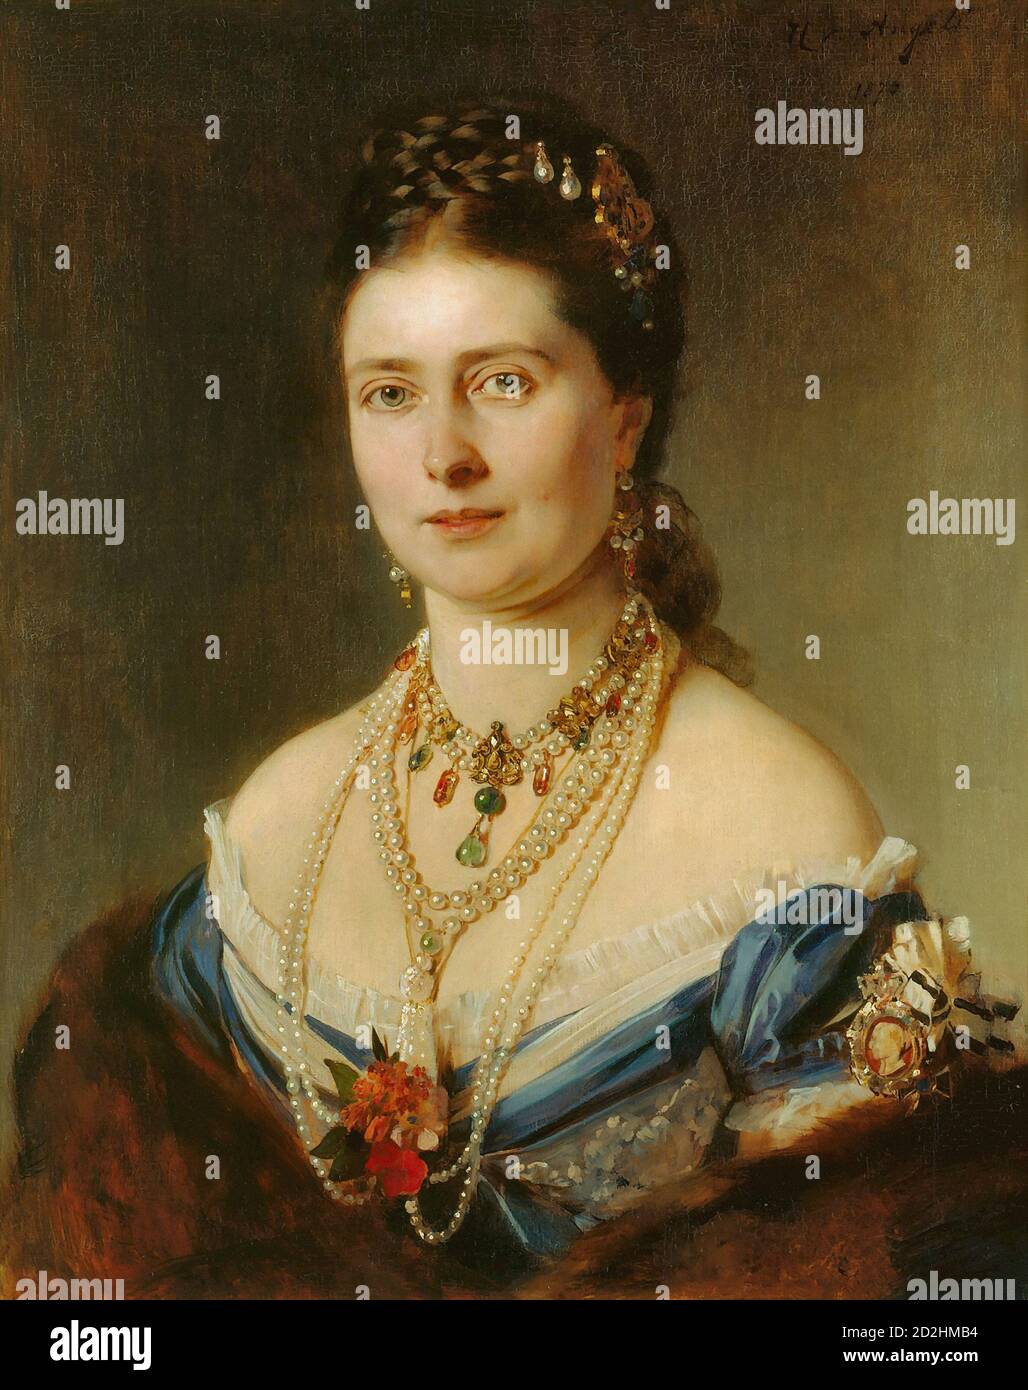 Angeli Heinrich Von - Princesse royale de Victoria Princesse de la Couronne Allemagne - École autrichienne - 19e siècle Banque D'Images